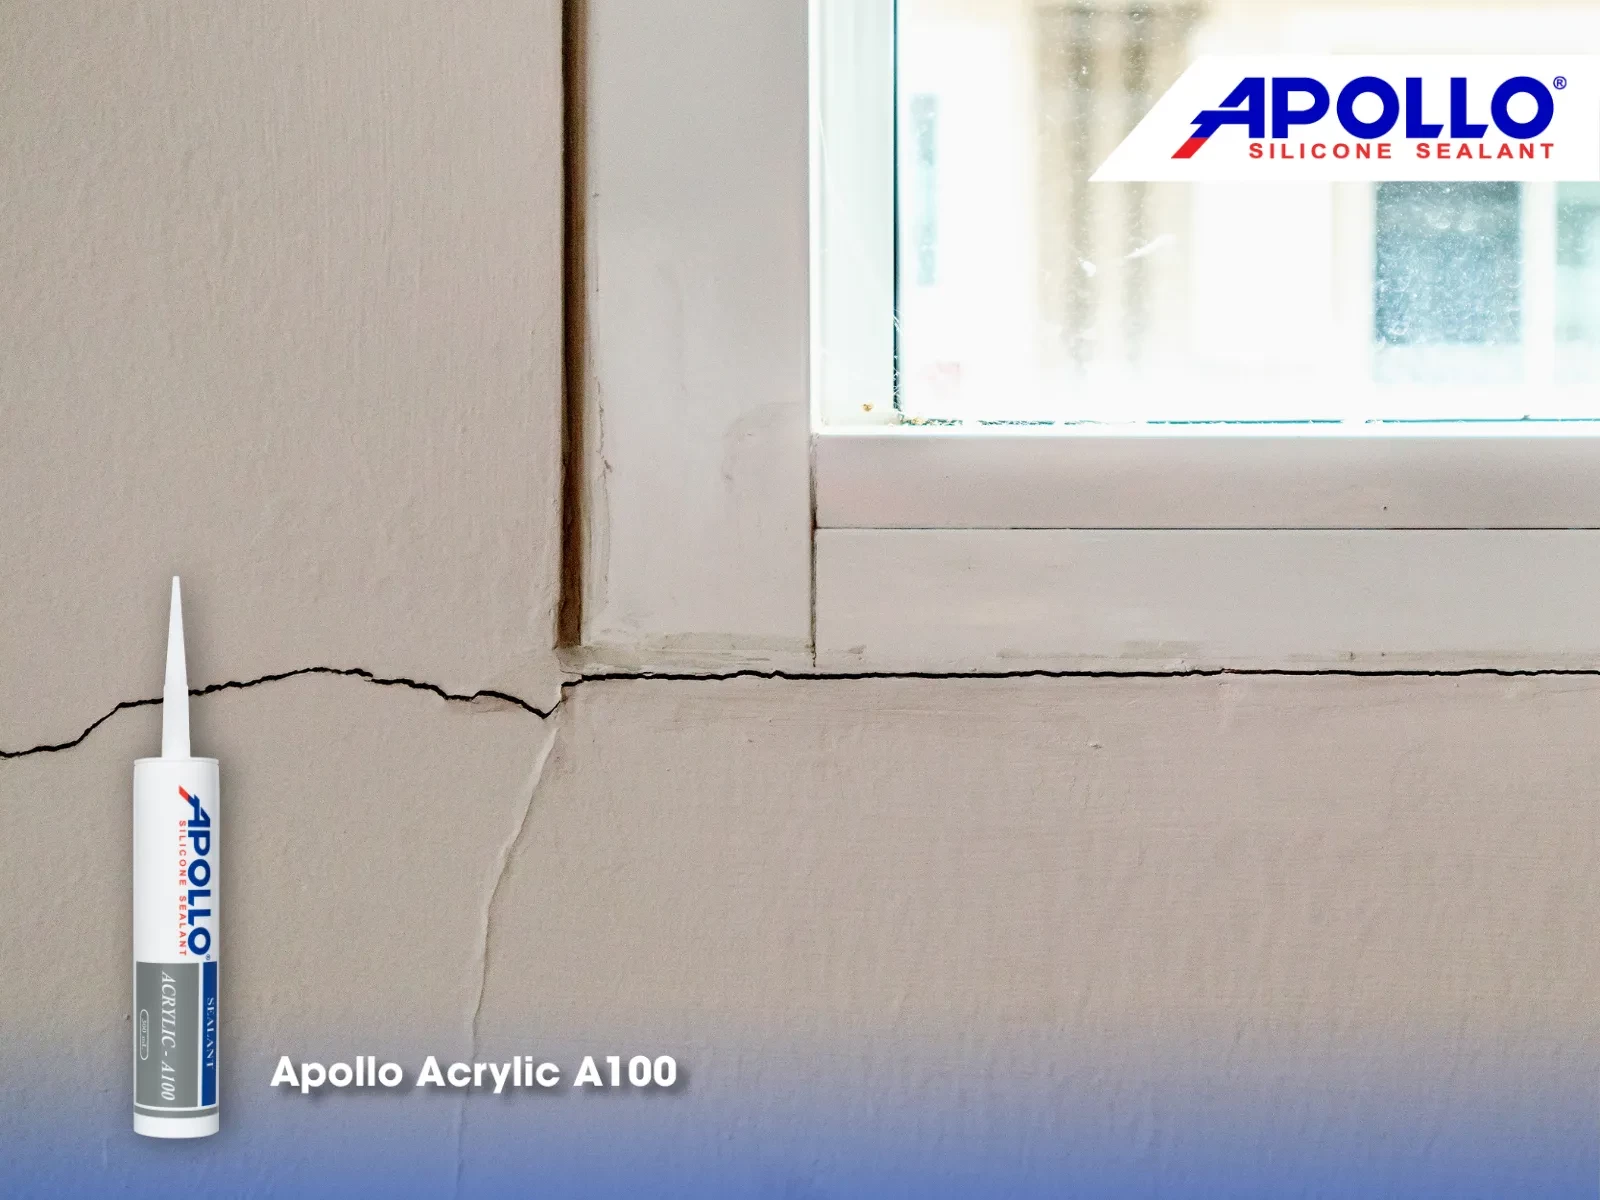 Apollo Acrylic A100 sẽ giúp bạn trám kín các vết nứt tường hiệu quả